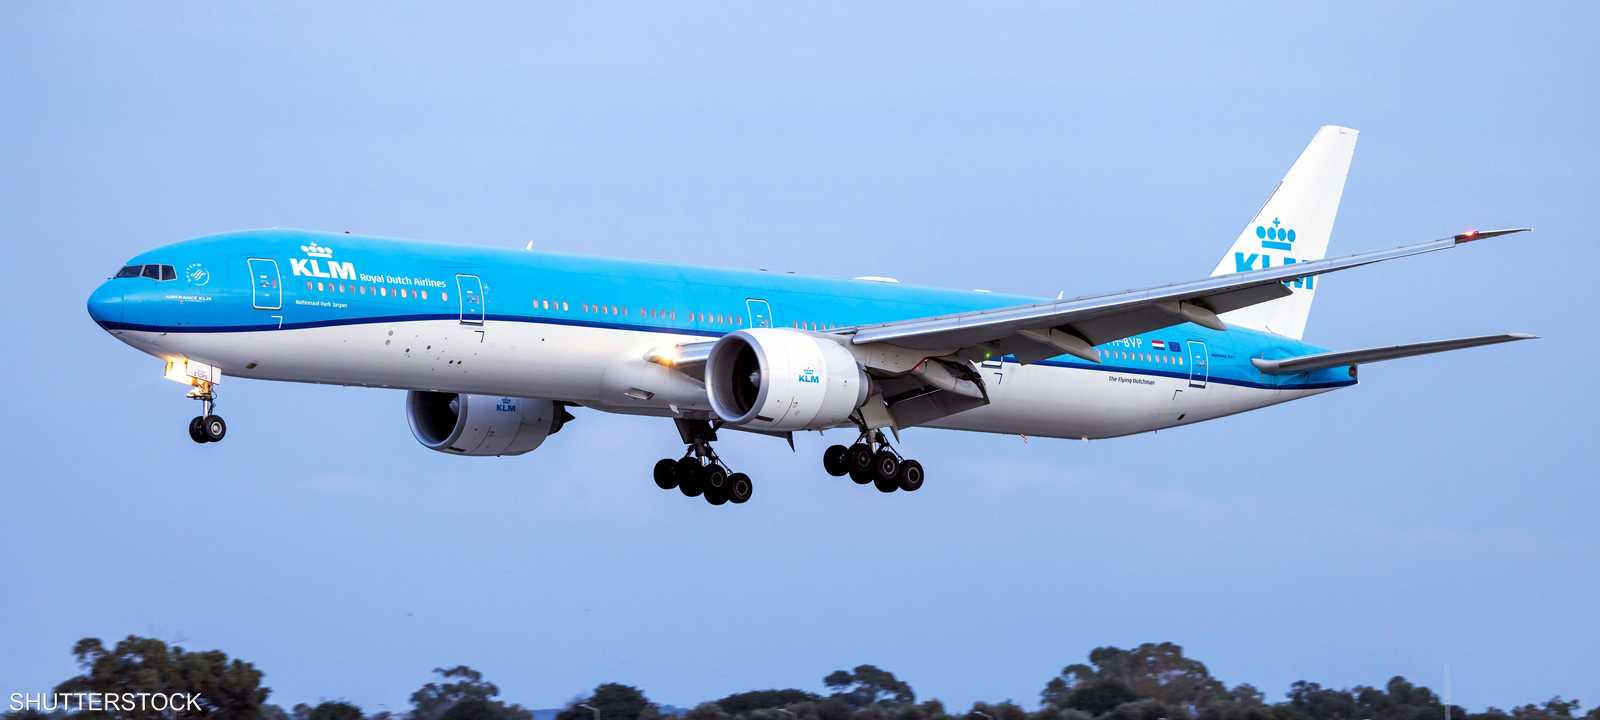 طائرة بوينغ 777 تابعة للخطوط الملكية في هولندا KLM